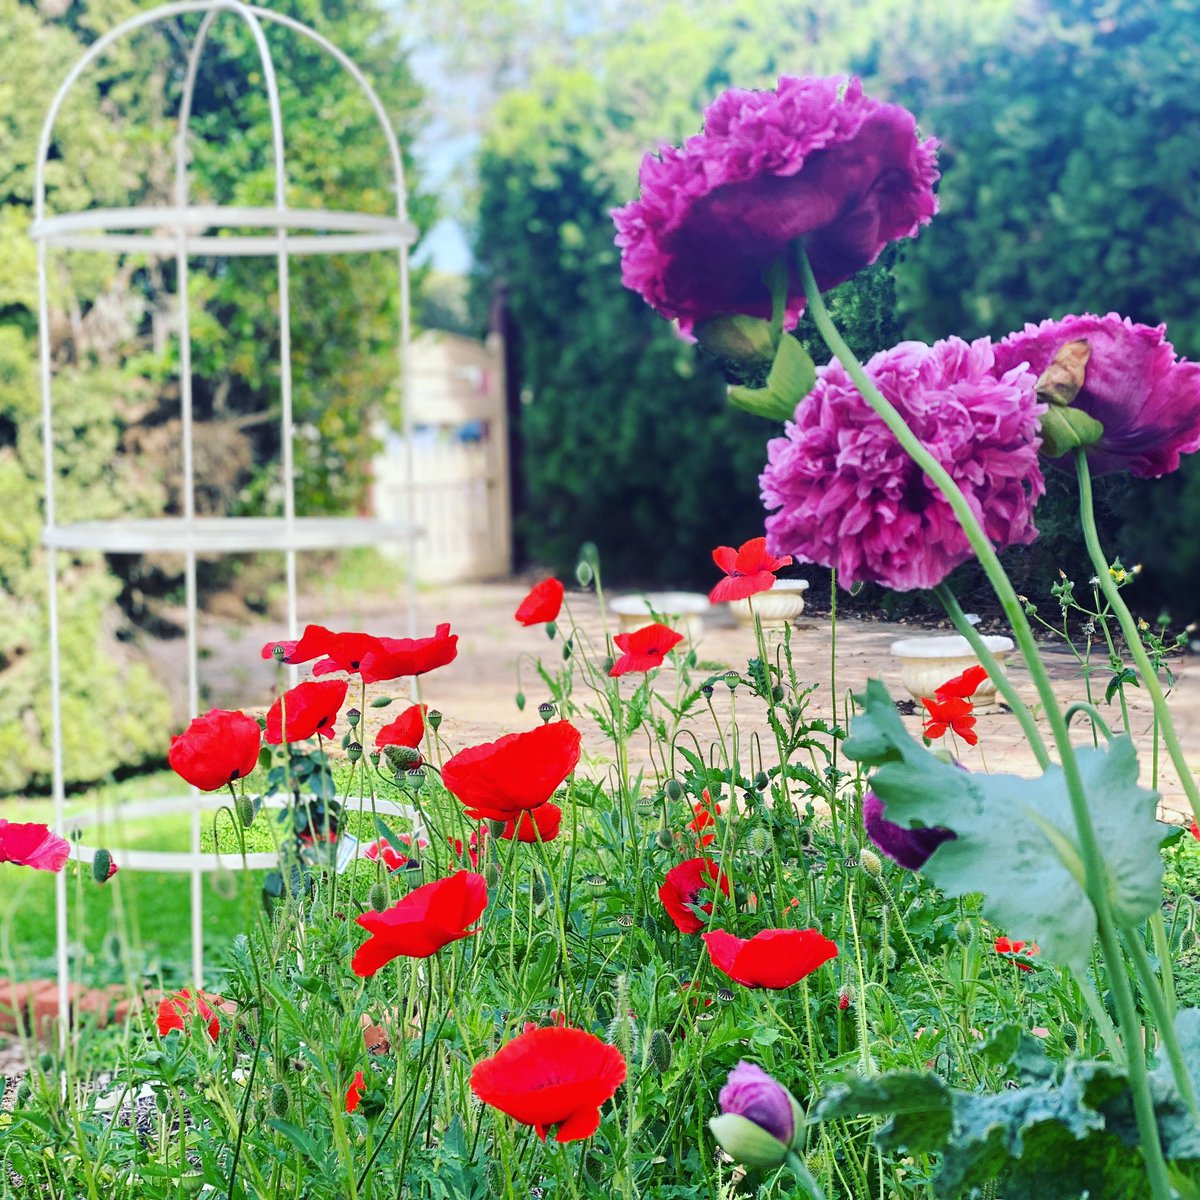 POPPIES • in my garden. That’s all! 🤗

#springhassprung #poppies #avonvalley